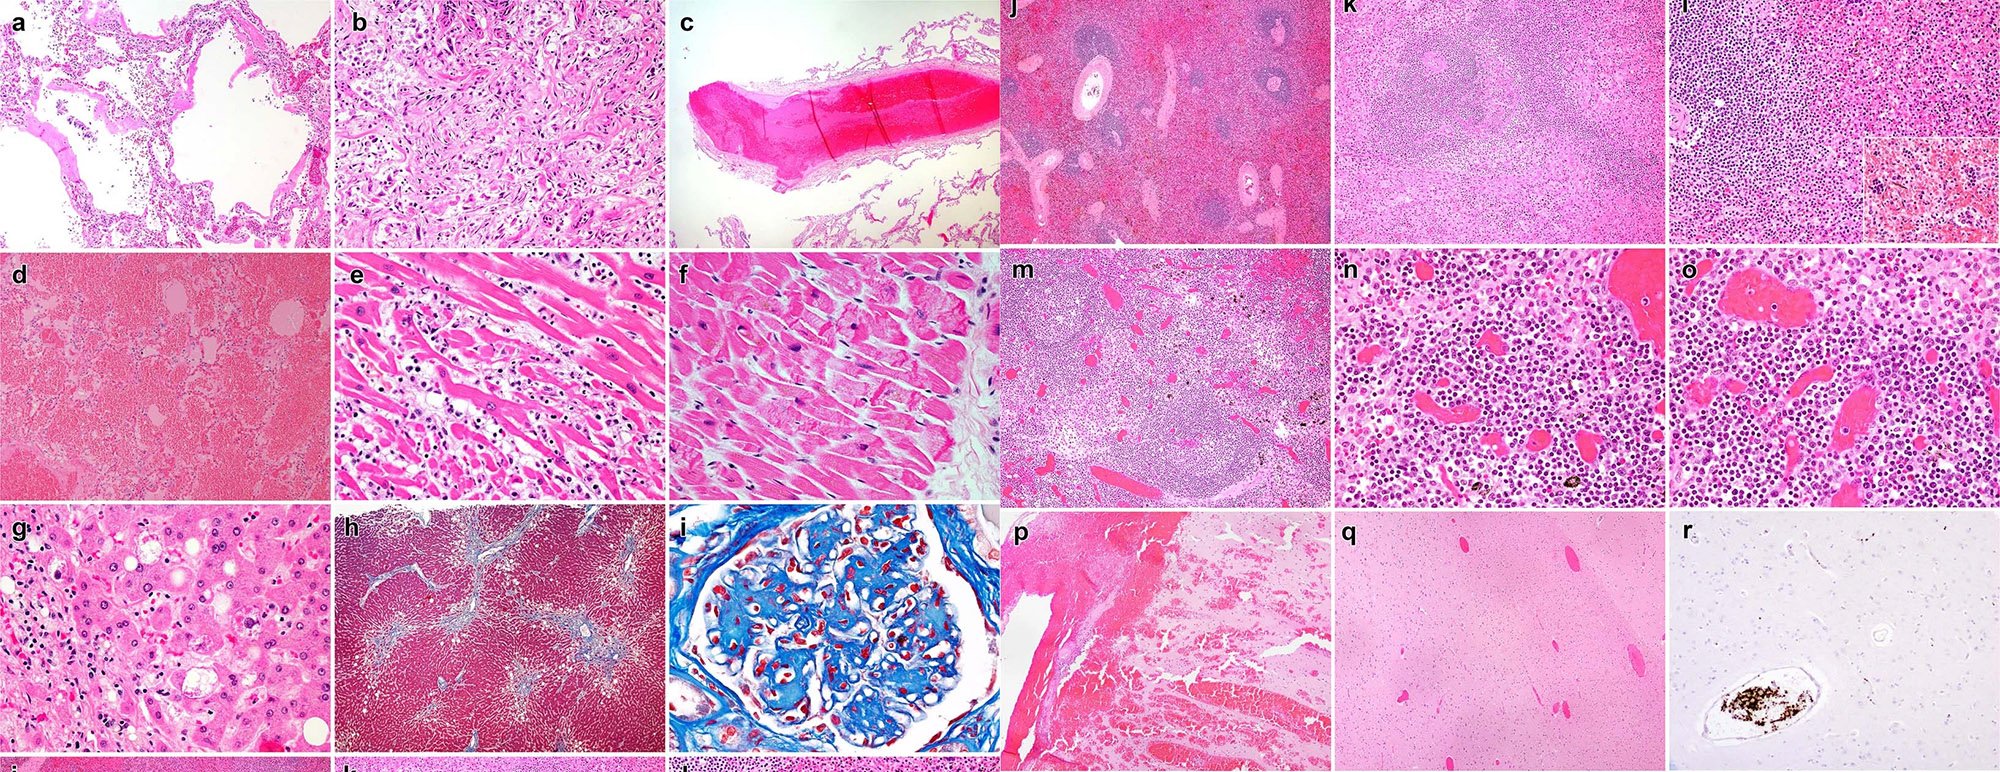 Diagnósticos histopatológicos de autópsias de pacientes com o vírus da covid-19 em diversos órgãos. (Fonte: Stein et al./Divulgação.)